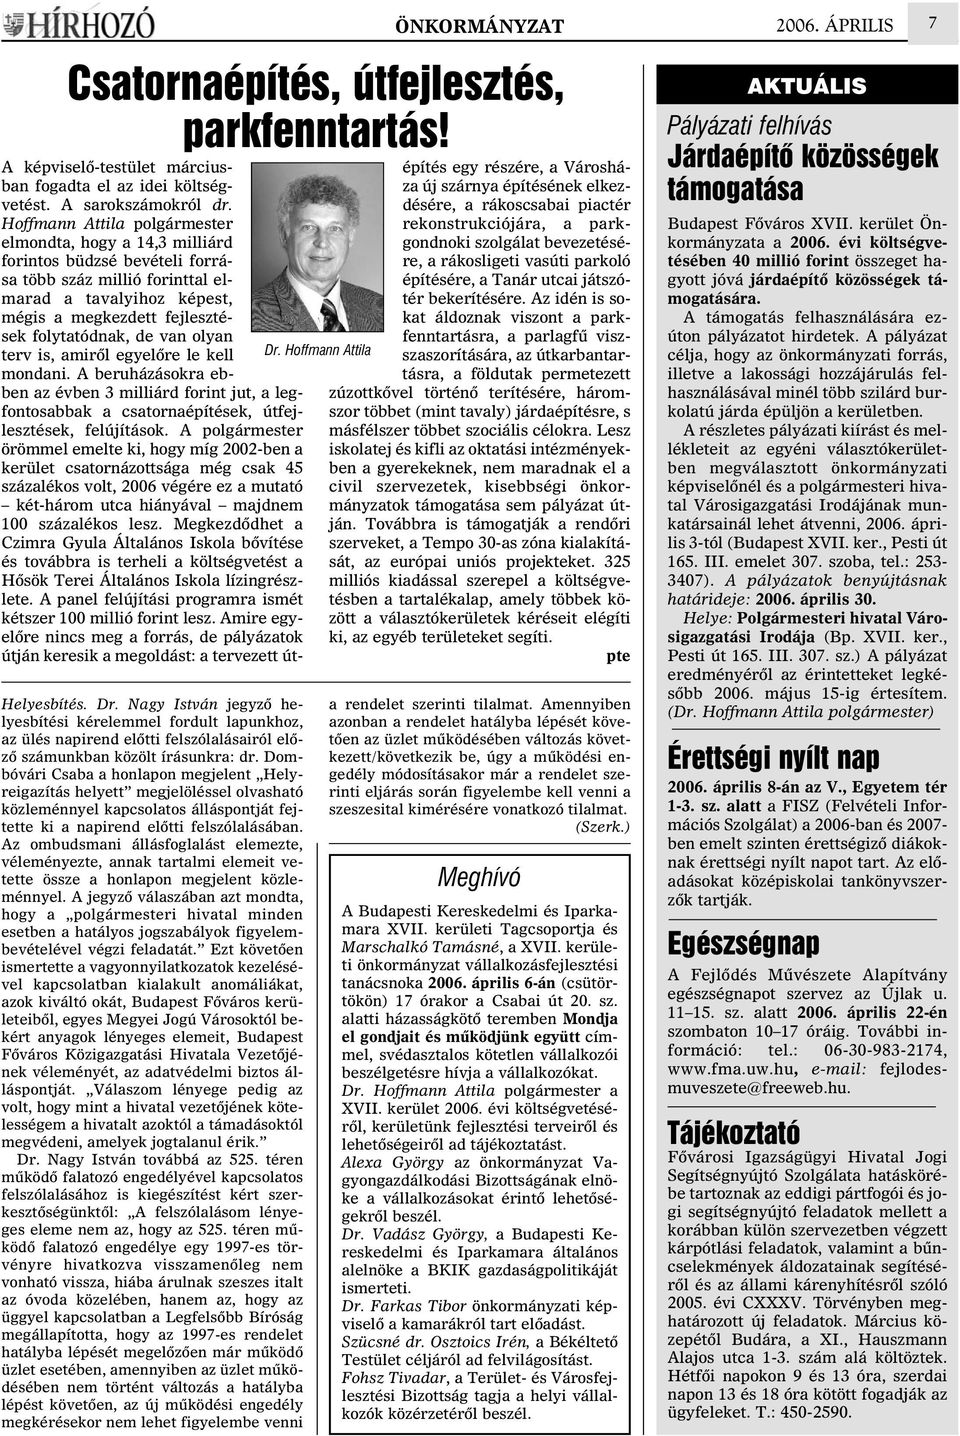 Dombóvári Csaba a honlapon megjelent Helyreigazítás helyett megjelöléssel olvasható közleménnyel kapcsolatos álláspontját fejtette ki a napirend elõtti felszólalásában.